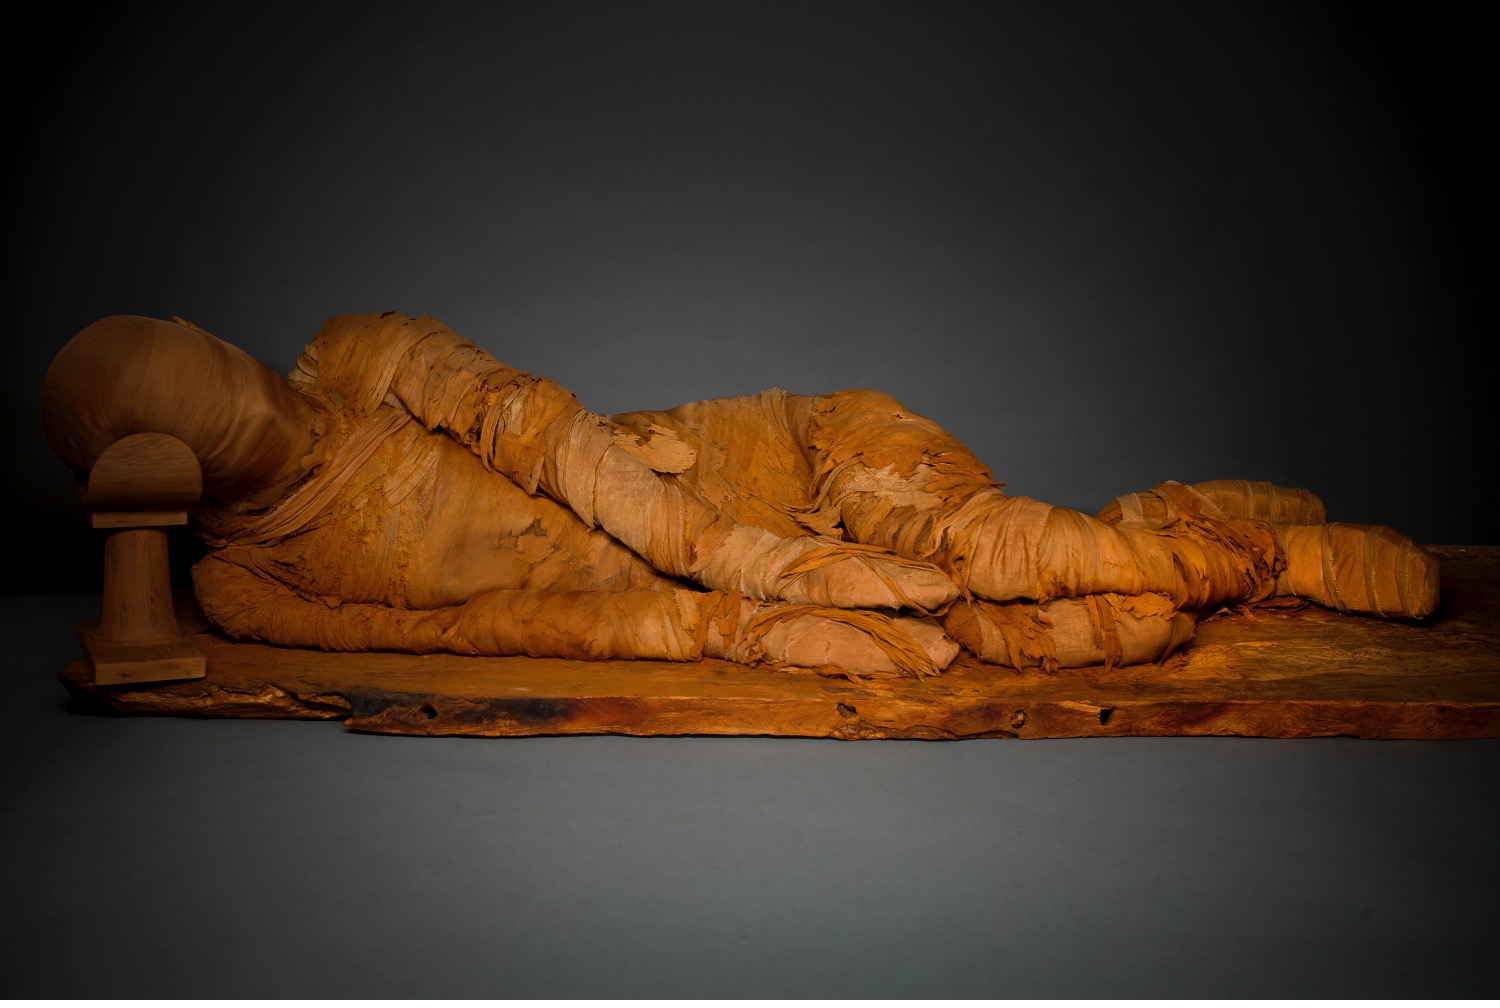  Mummy and Coffin base, Old Kingdom, Dynasty 6